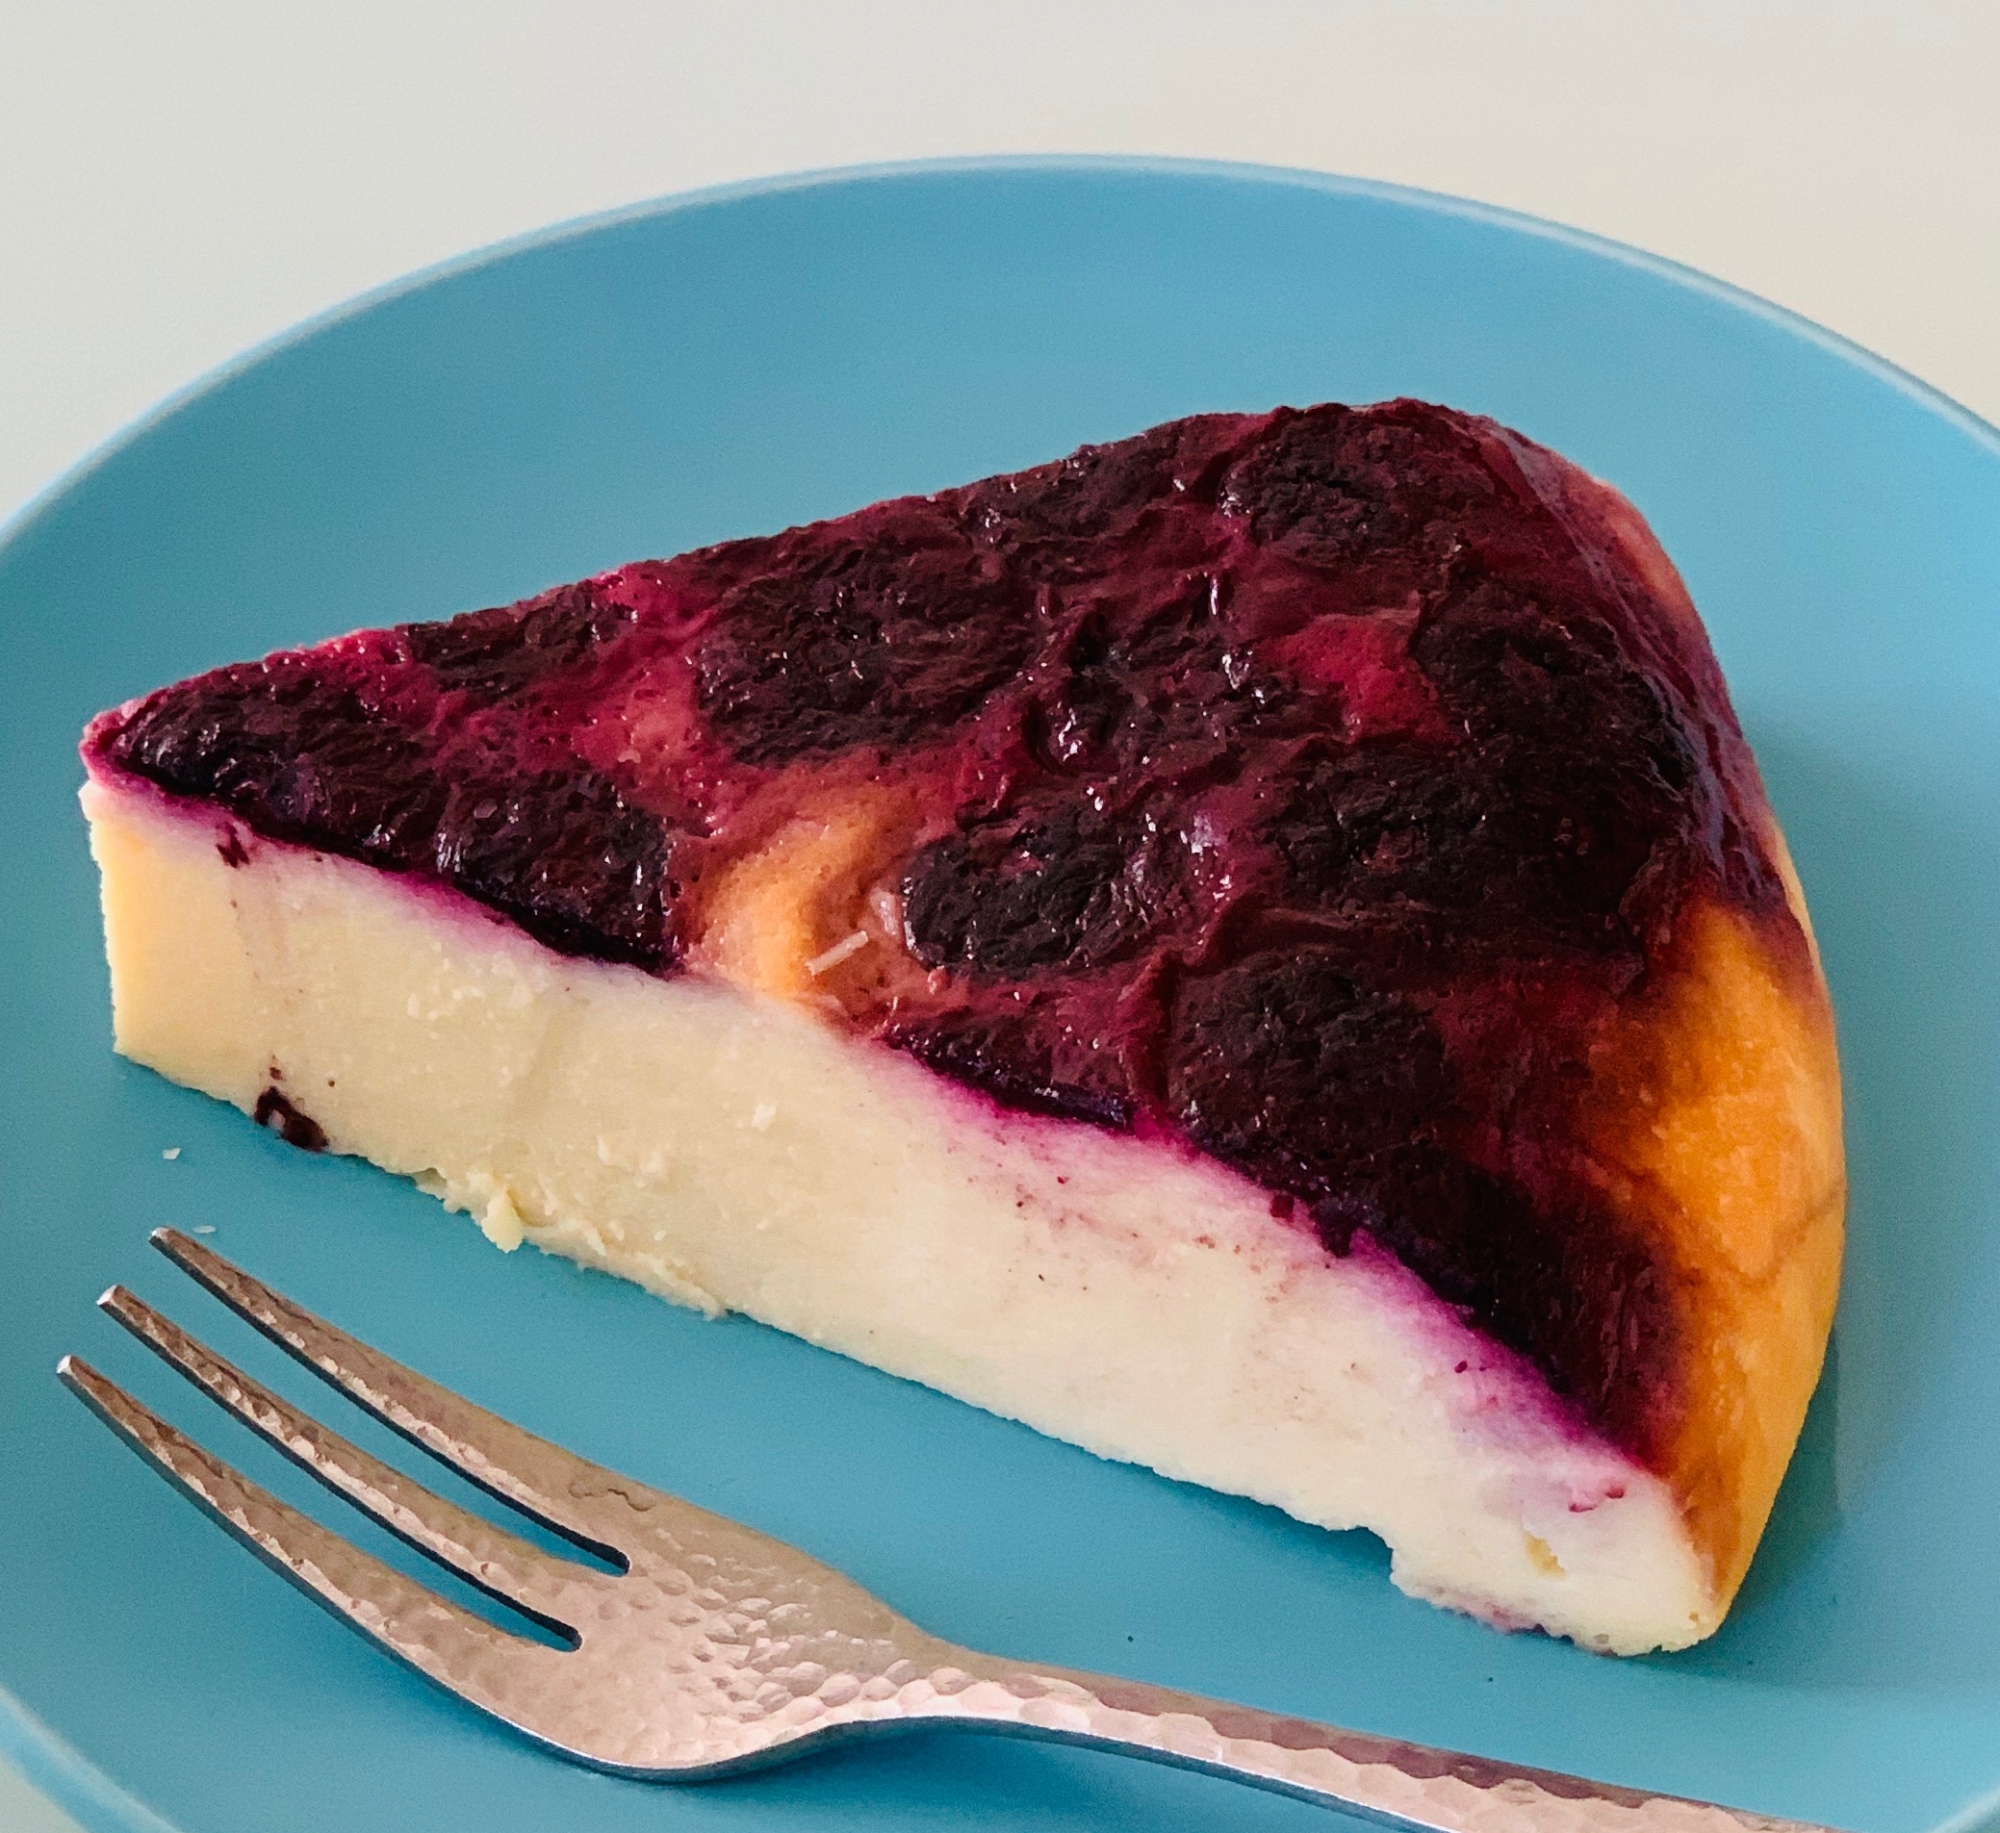 青い丸皿にのった、表面にブルーベリーが入っているチーズケーキ